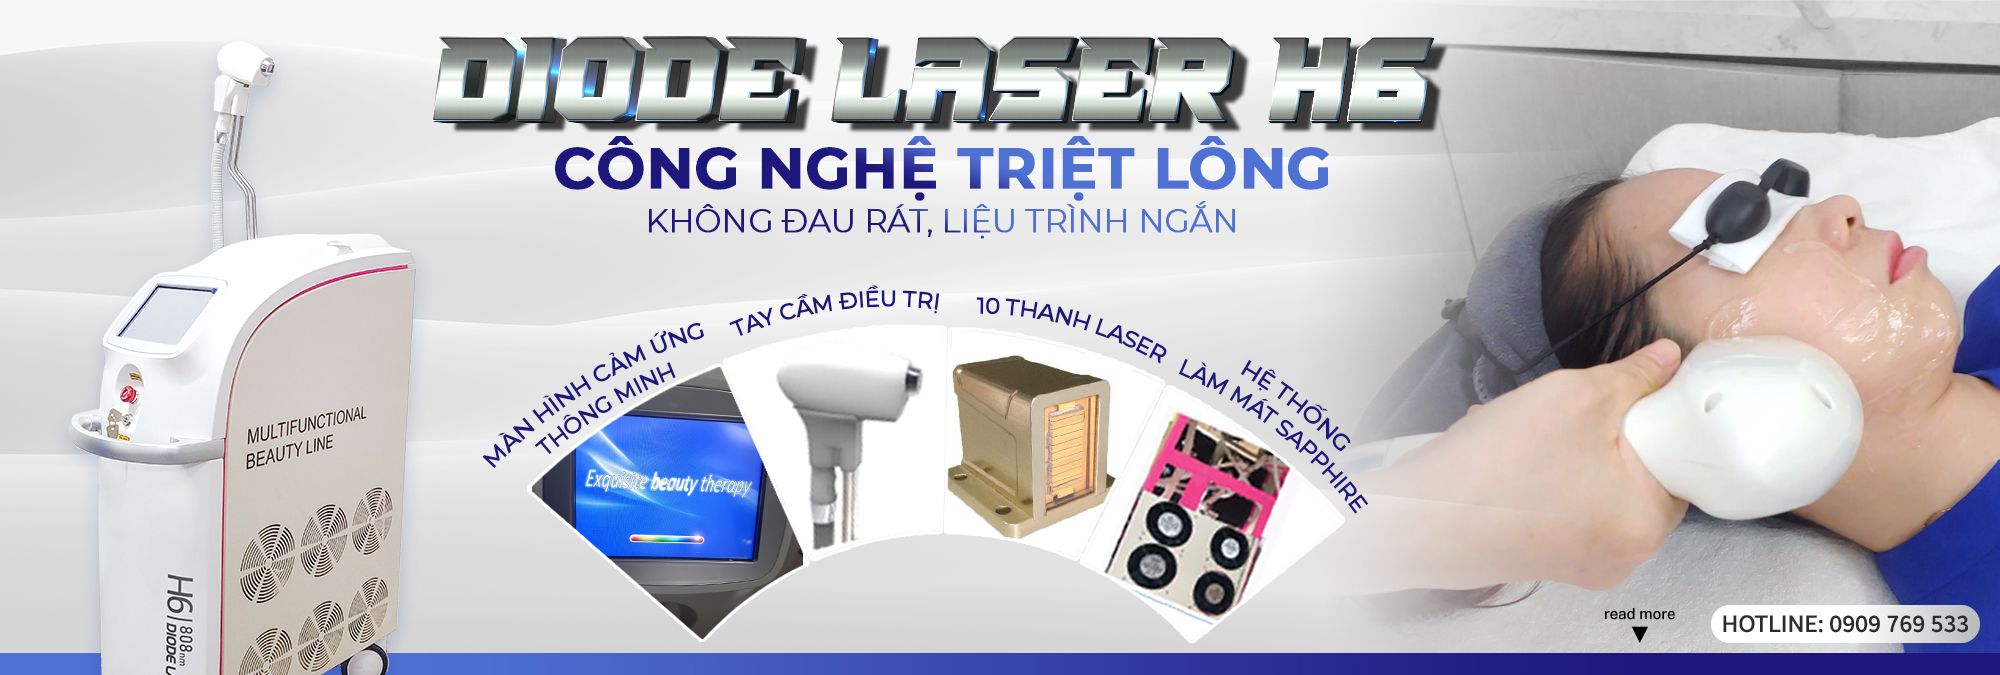 Công nghệ Diode Laser